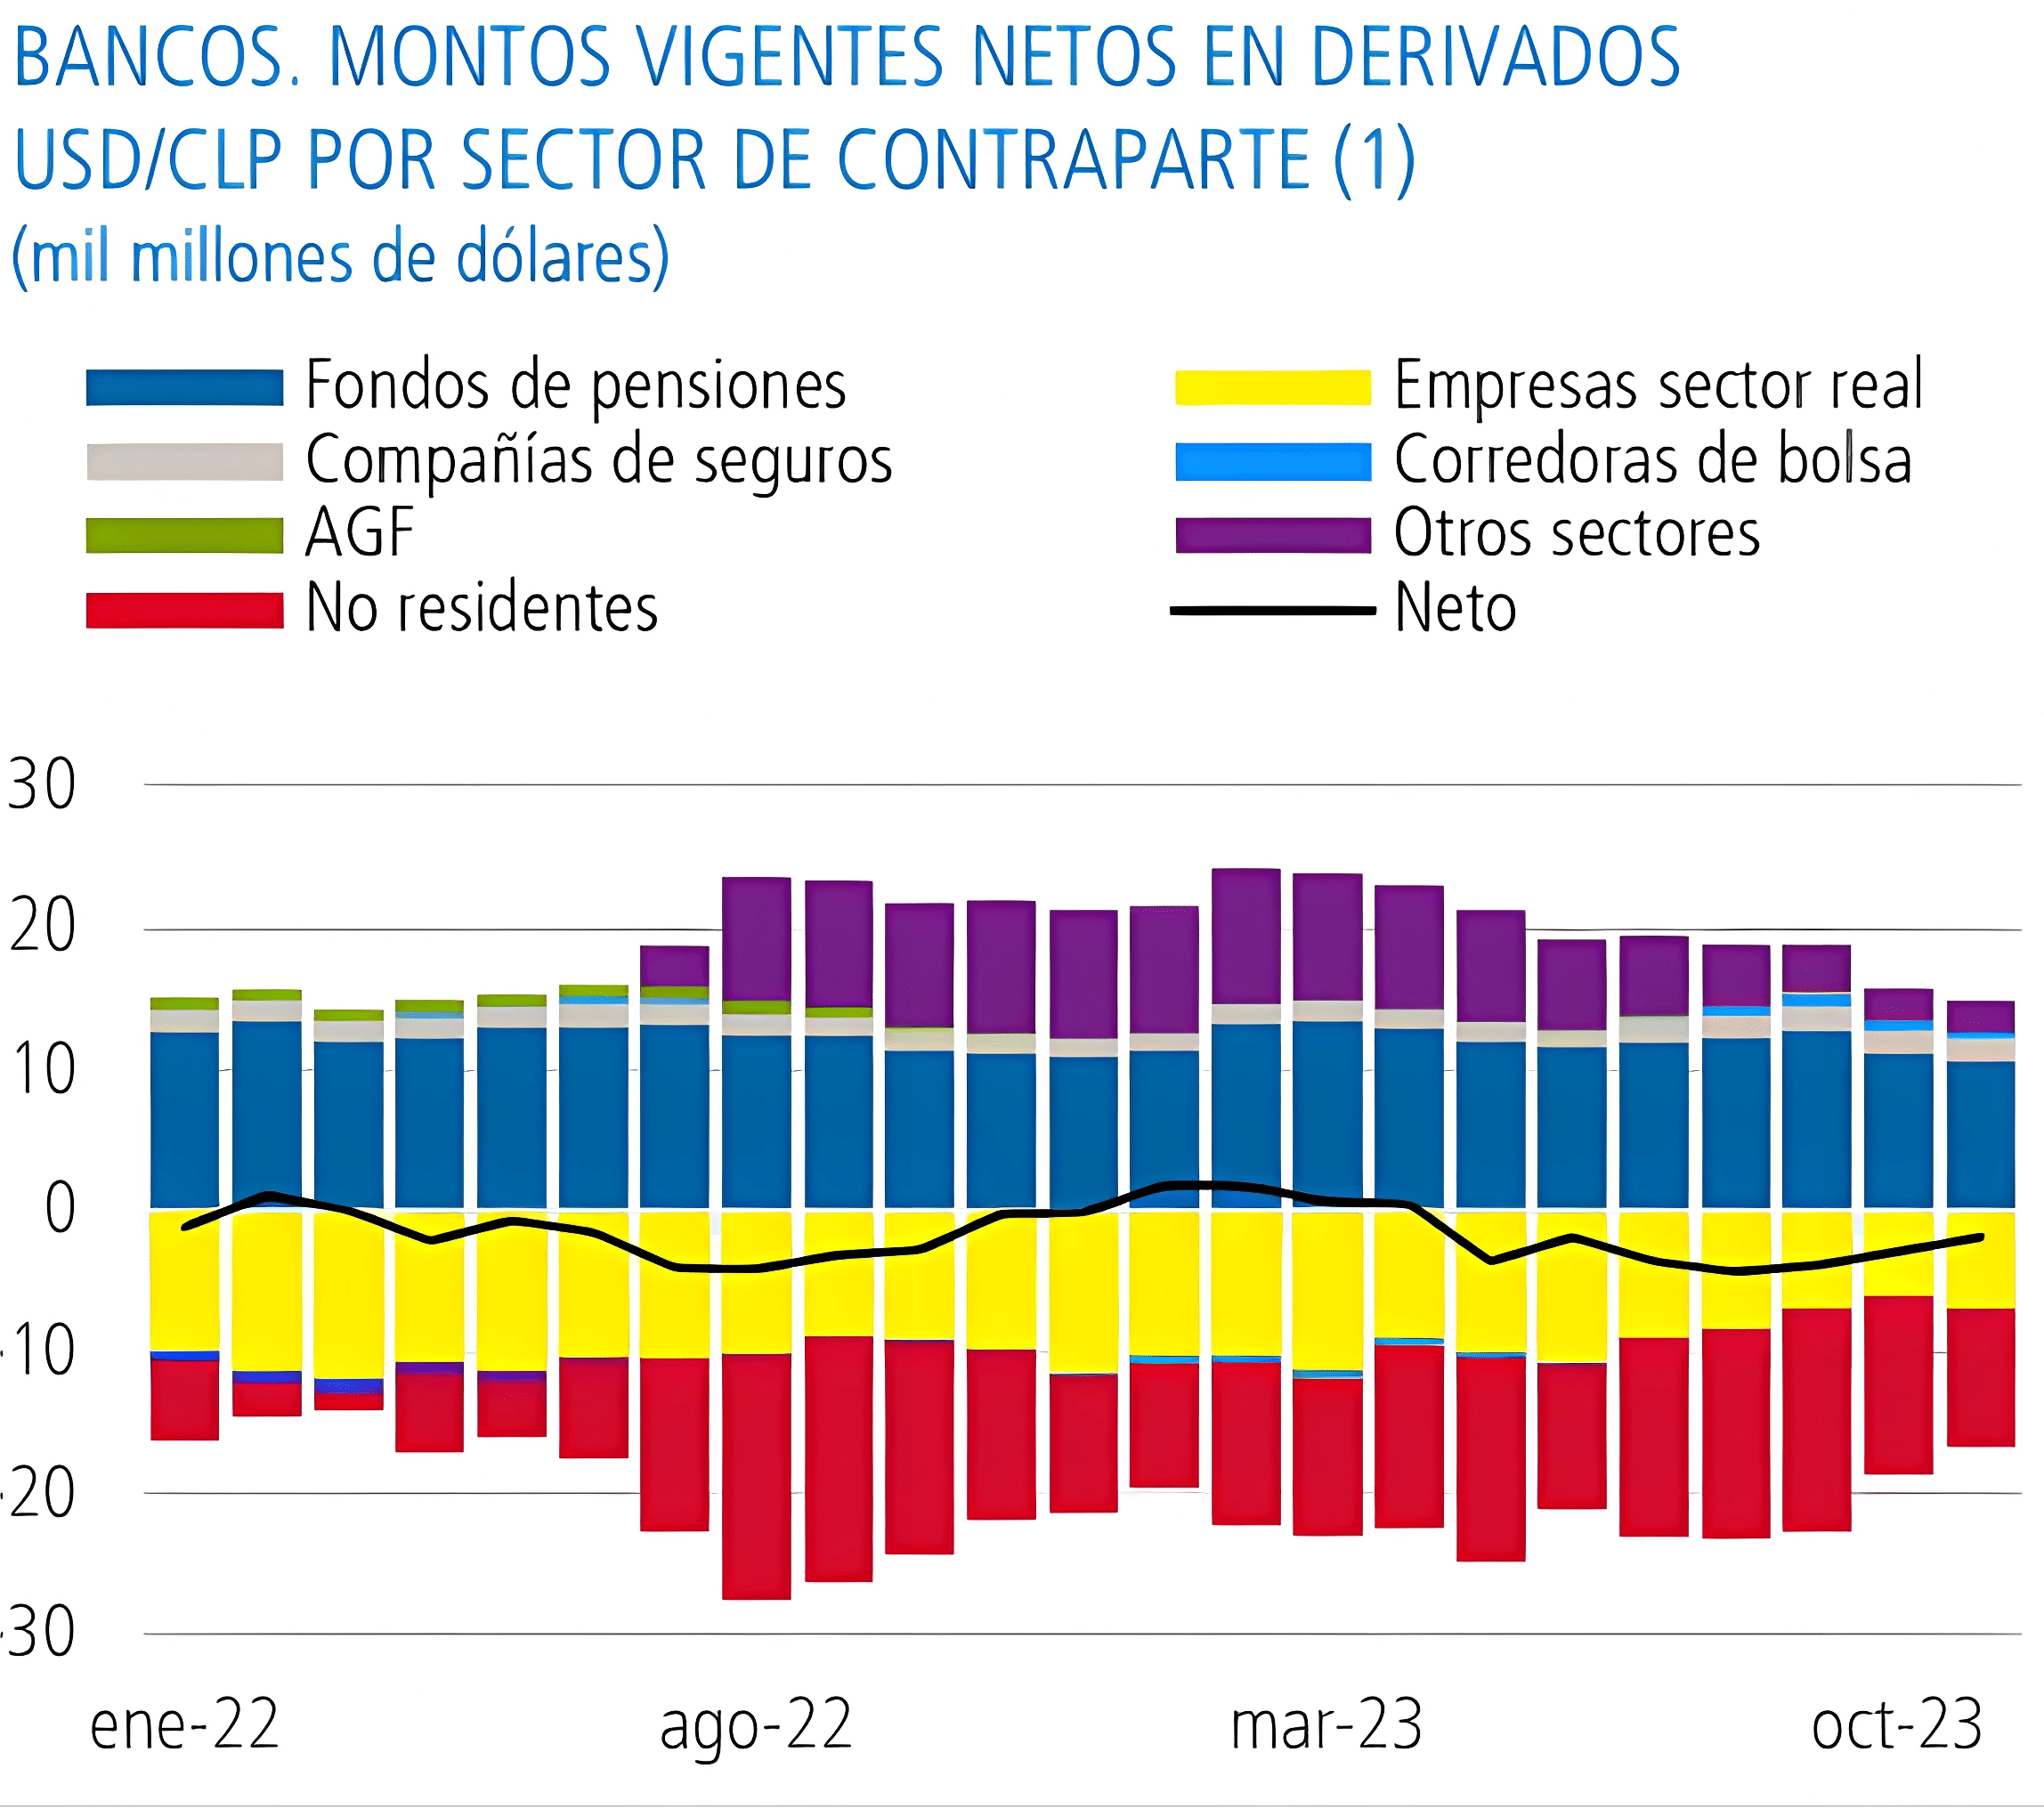 Montos vigentes netos en derivados chilenos por contraparte en 2023